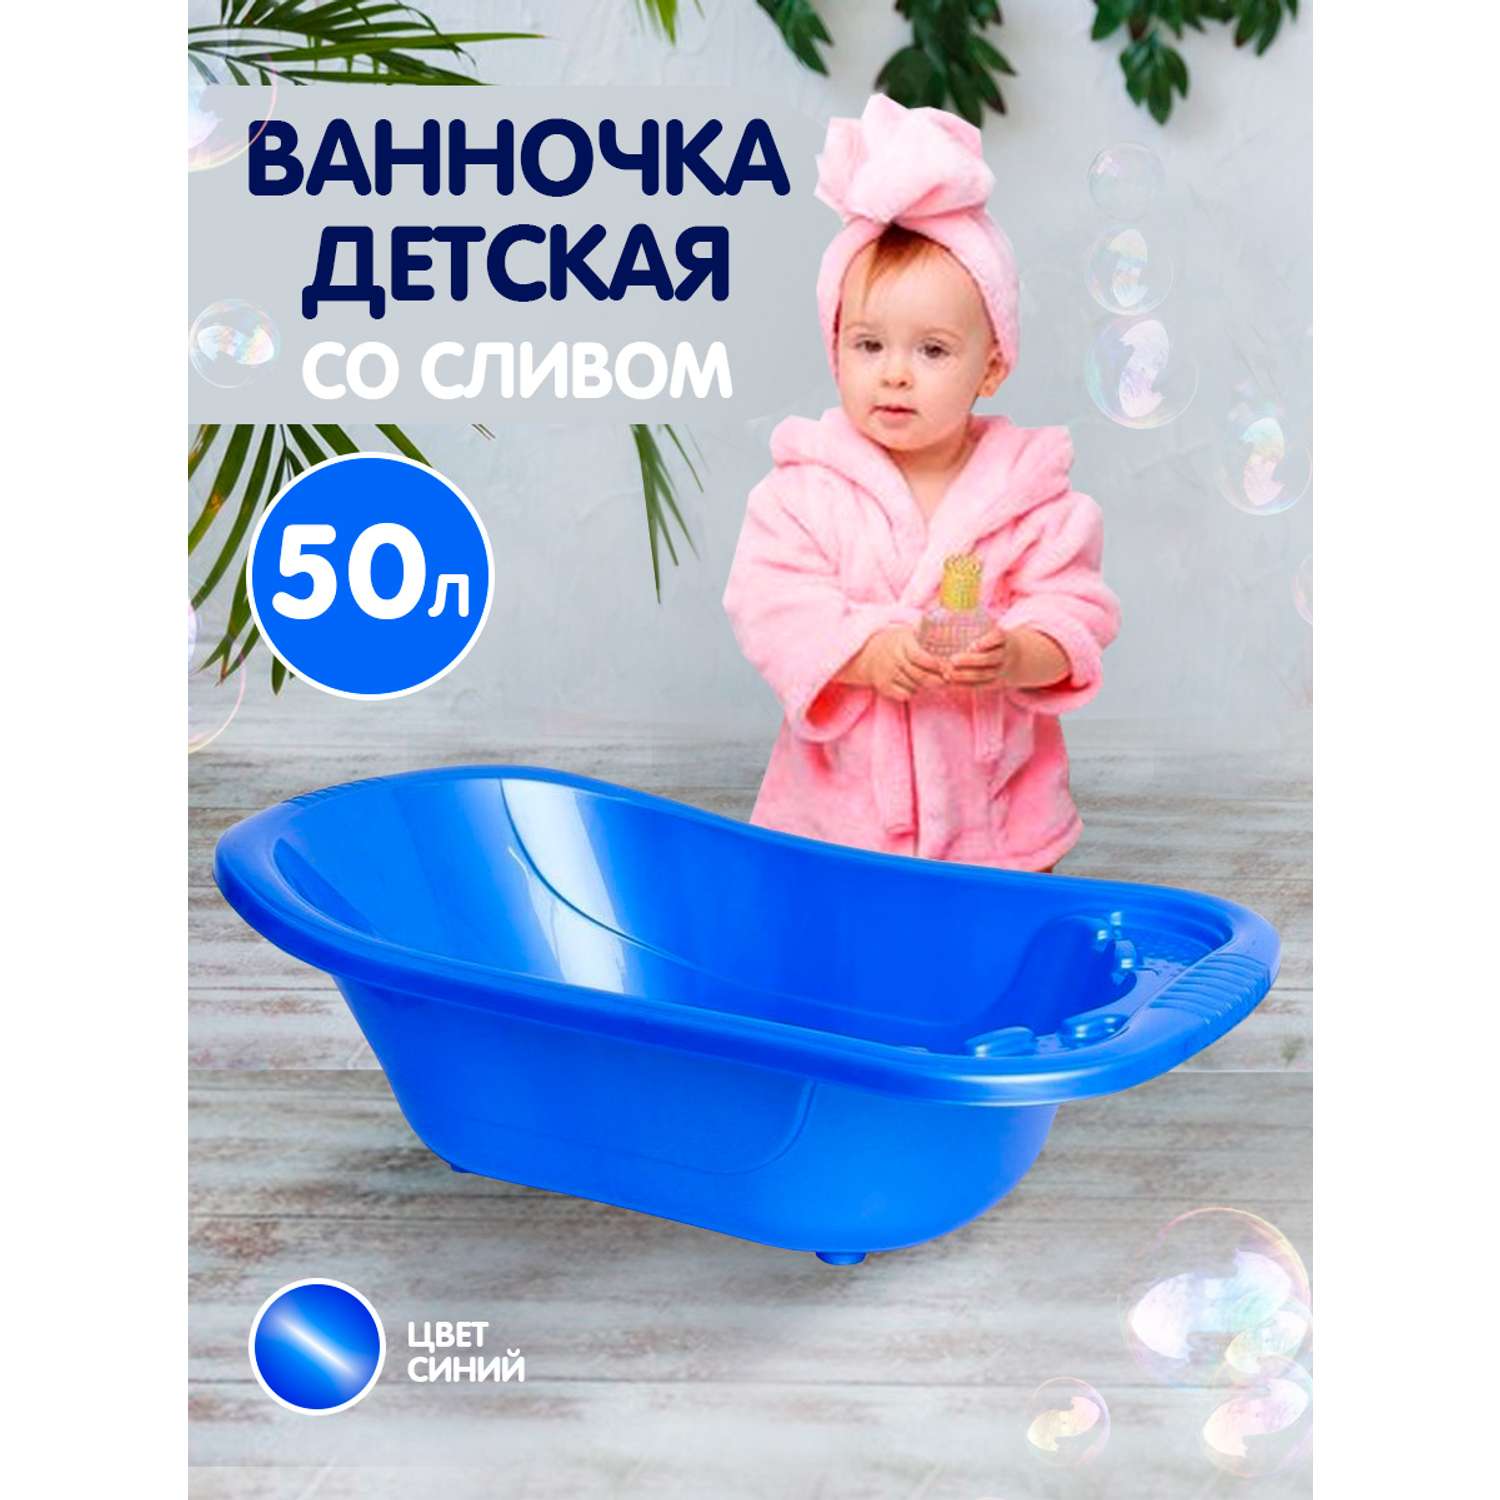 Ванна детская elfplast для купания со сливным клапаном 50 л синий - фото 1